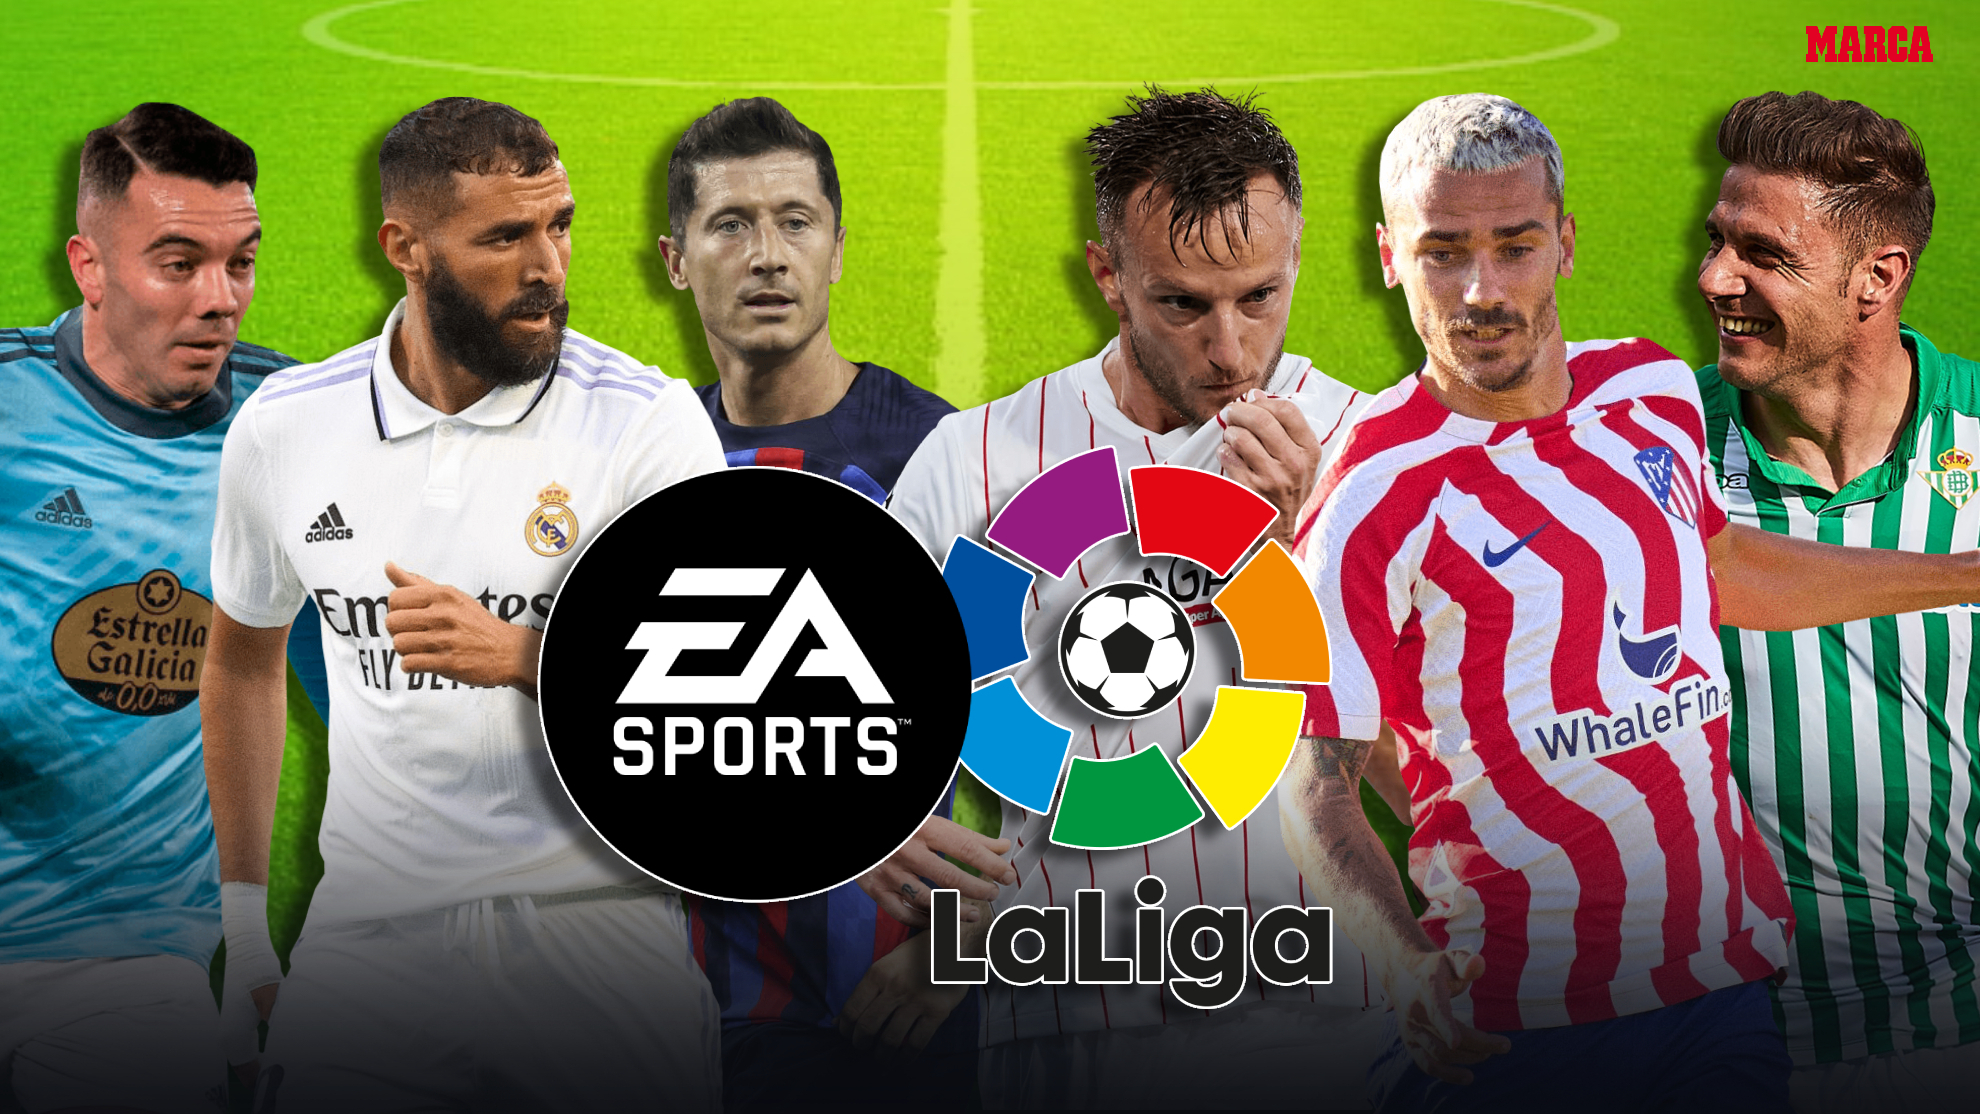 LaLiga confirma la exclusiva de MARCA: EA Sports dar nombre al campeonato